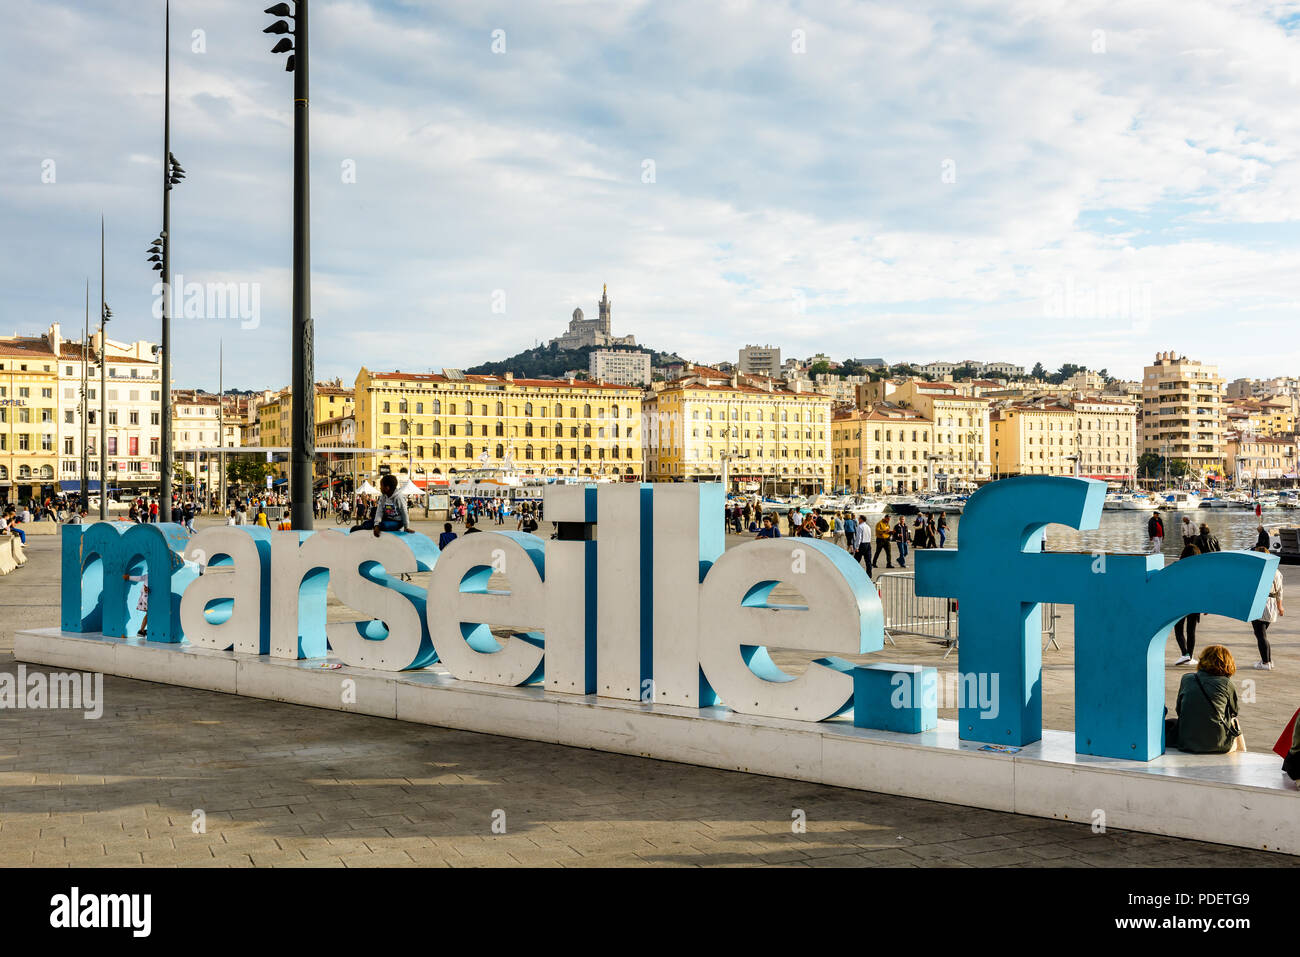 Le Vieux Port de Marseille avec l'adresse du site web de la ville 'marseille.fr' dans de grandes lettres 3D et la Basilique de Notre-Dame de la Garde sur la colline. Banque D'Images